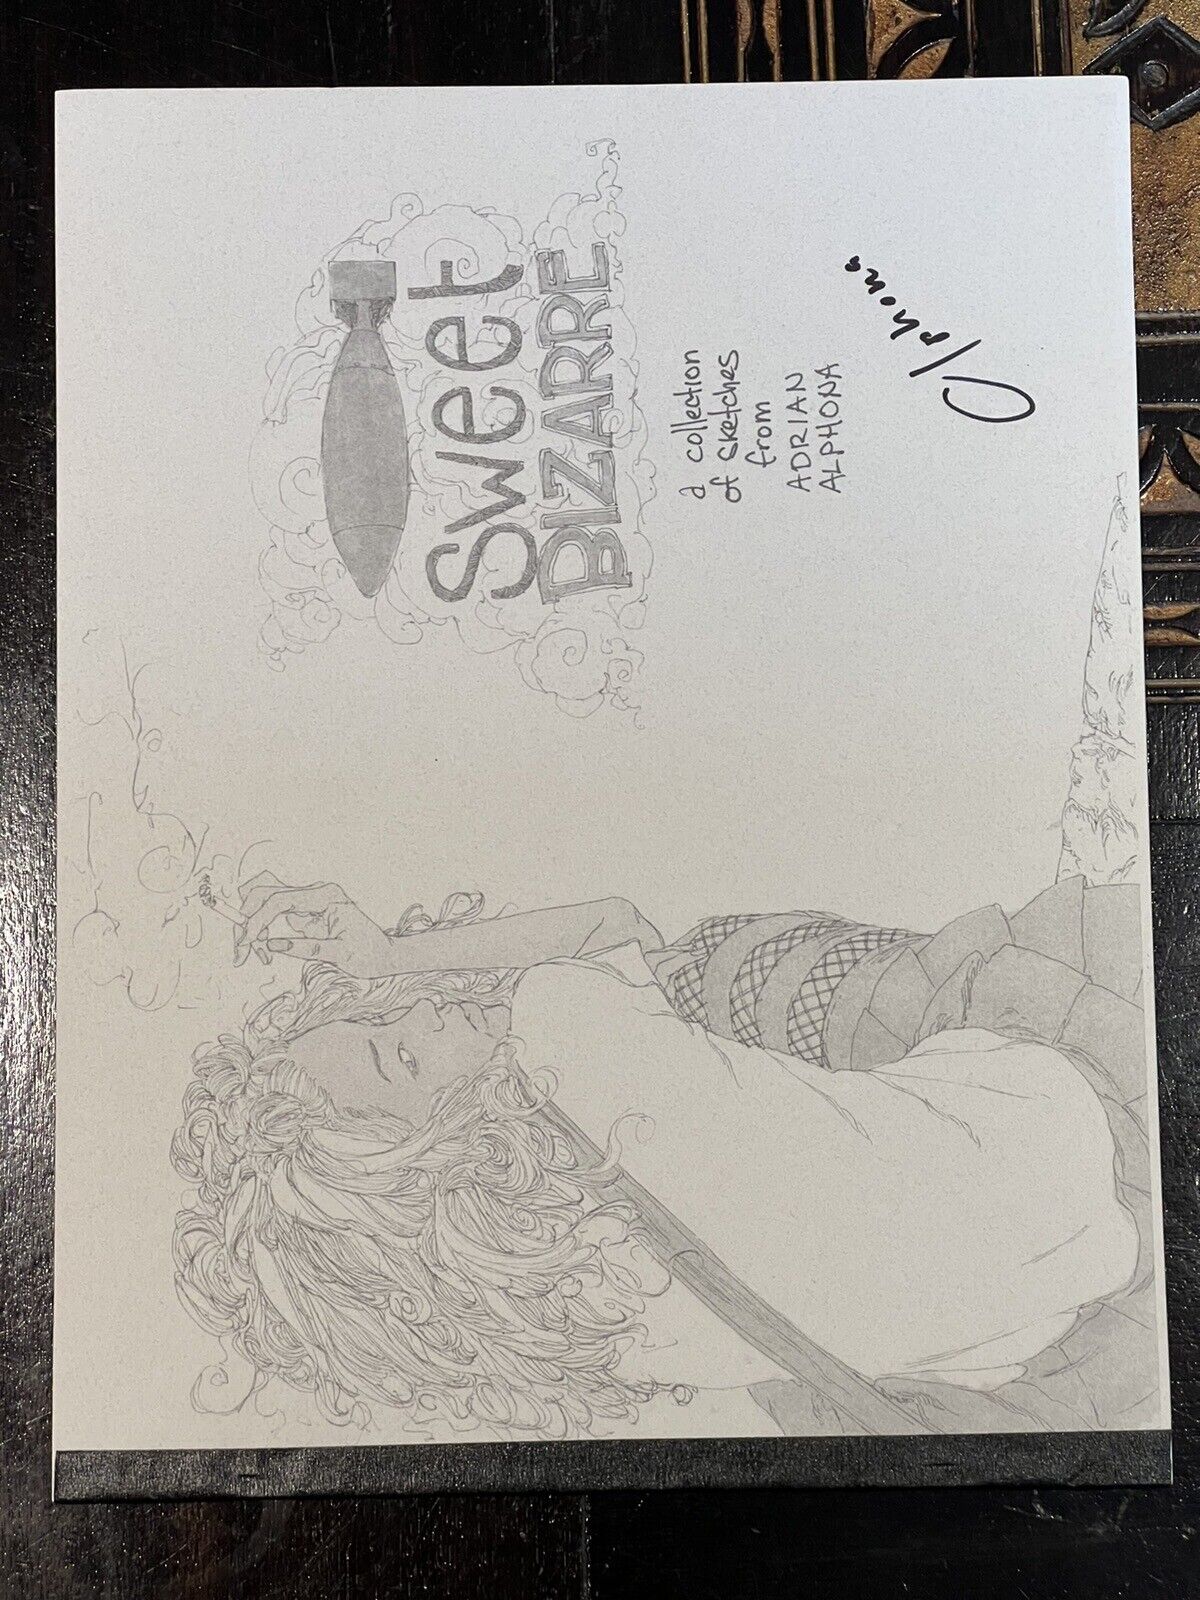 SWEET BIZARRE Sketchbook Signed by Adrian Alphona